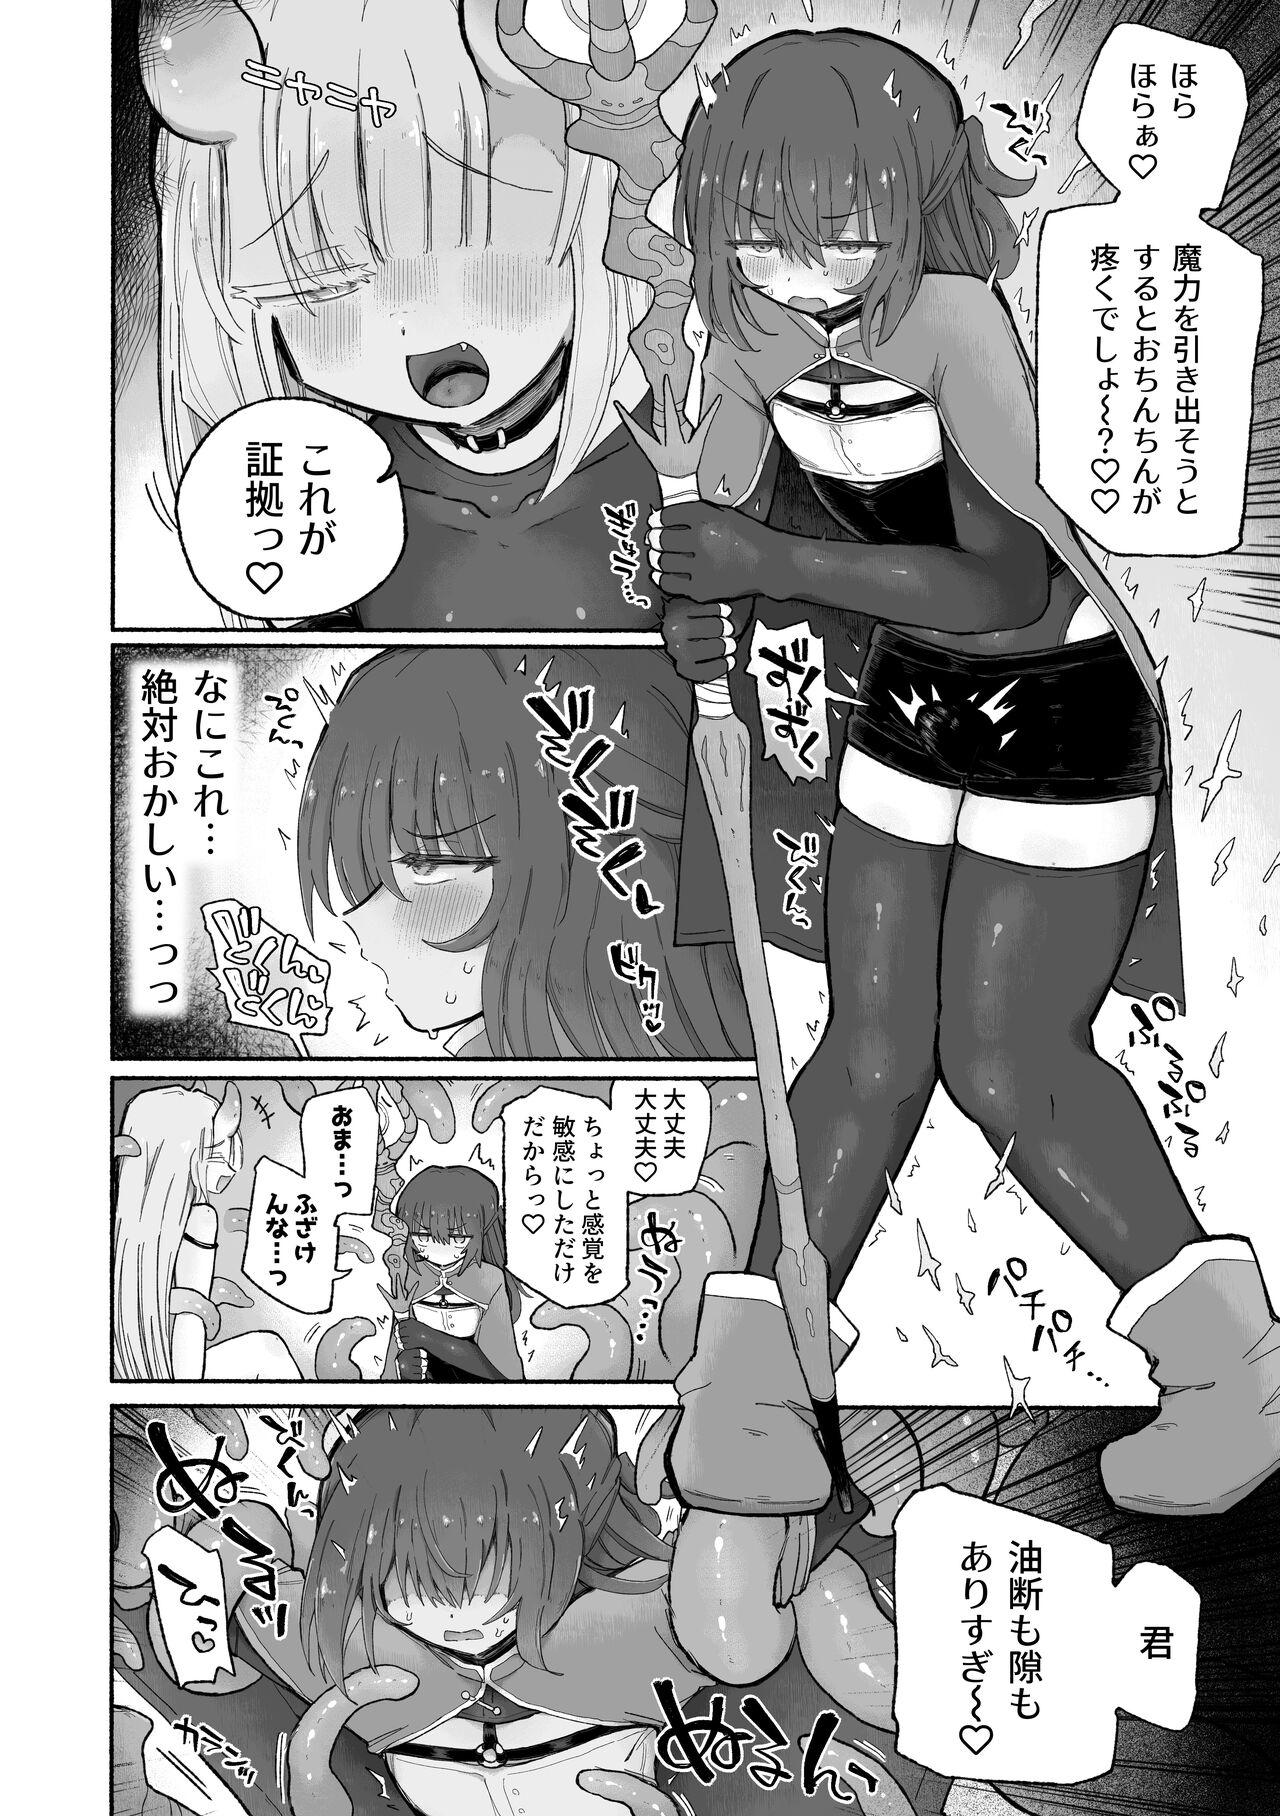 Black Hair Do hamari chui no kyosei danjon! 〜Mugen shasei no kairaku jigoku e yokoso〜 - Original Classic - Page 8